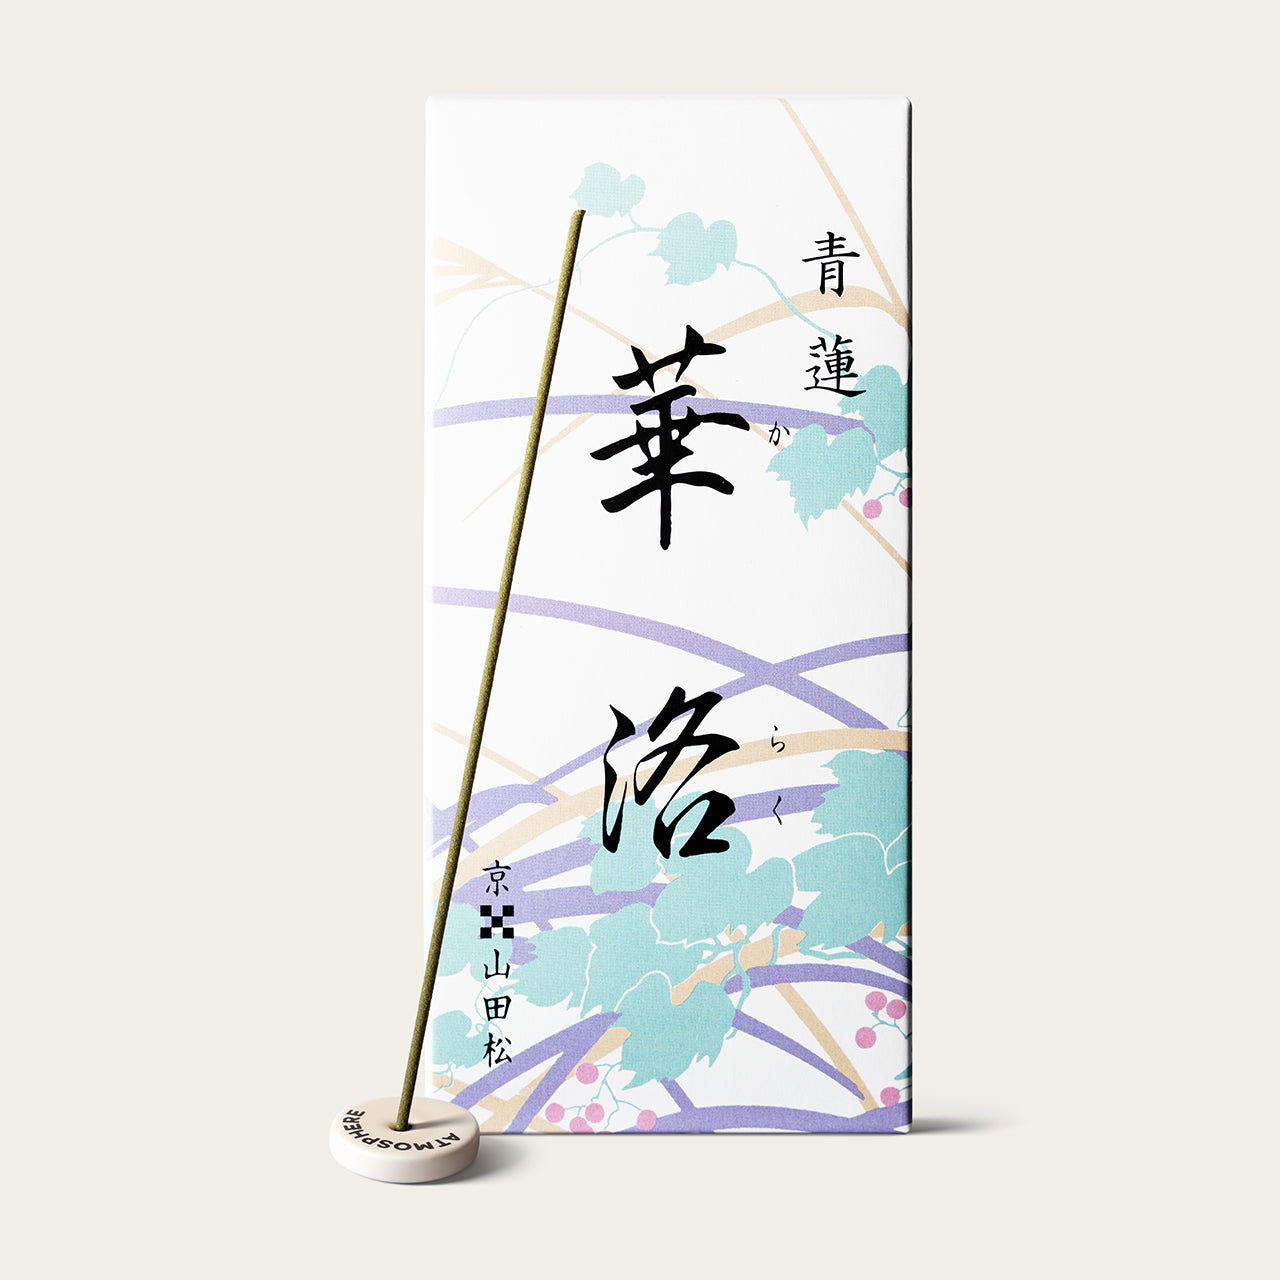 Yamadamatsu Karaku Blue Lotus Shoren Karaku Japanese incense sticks (225 sticks) with Atmosphere ceramic incense holder